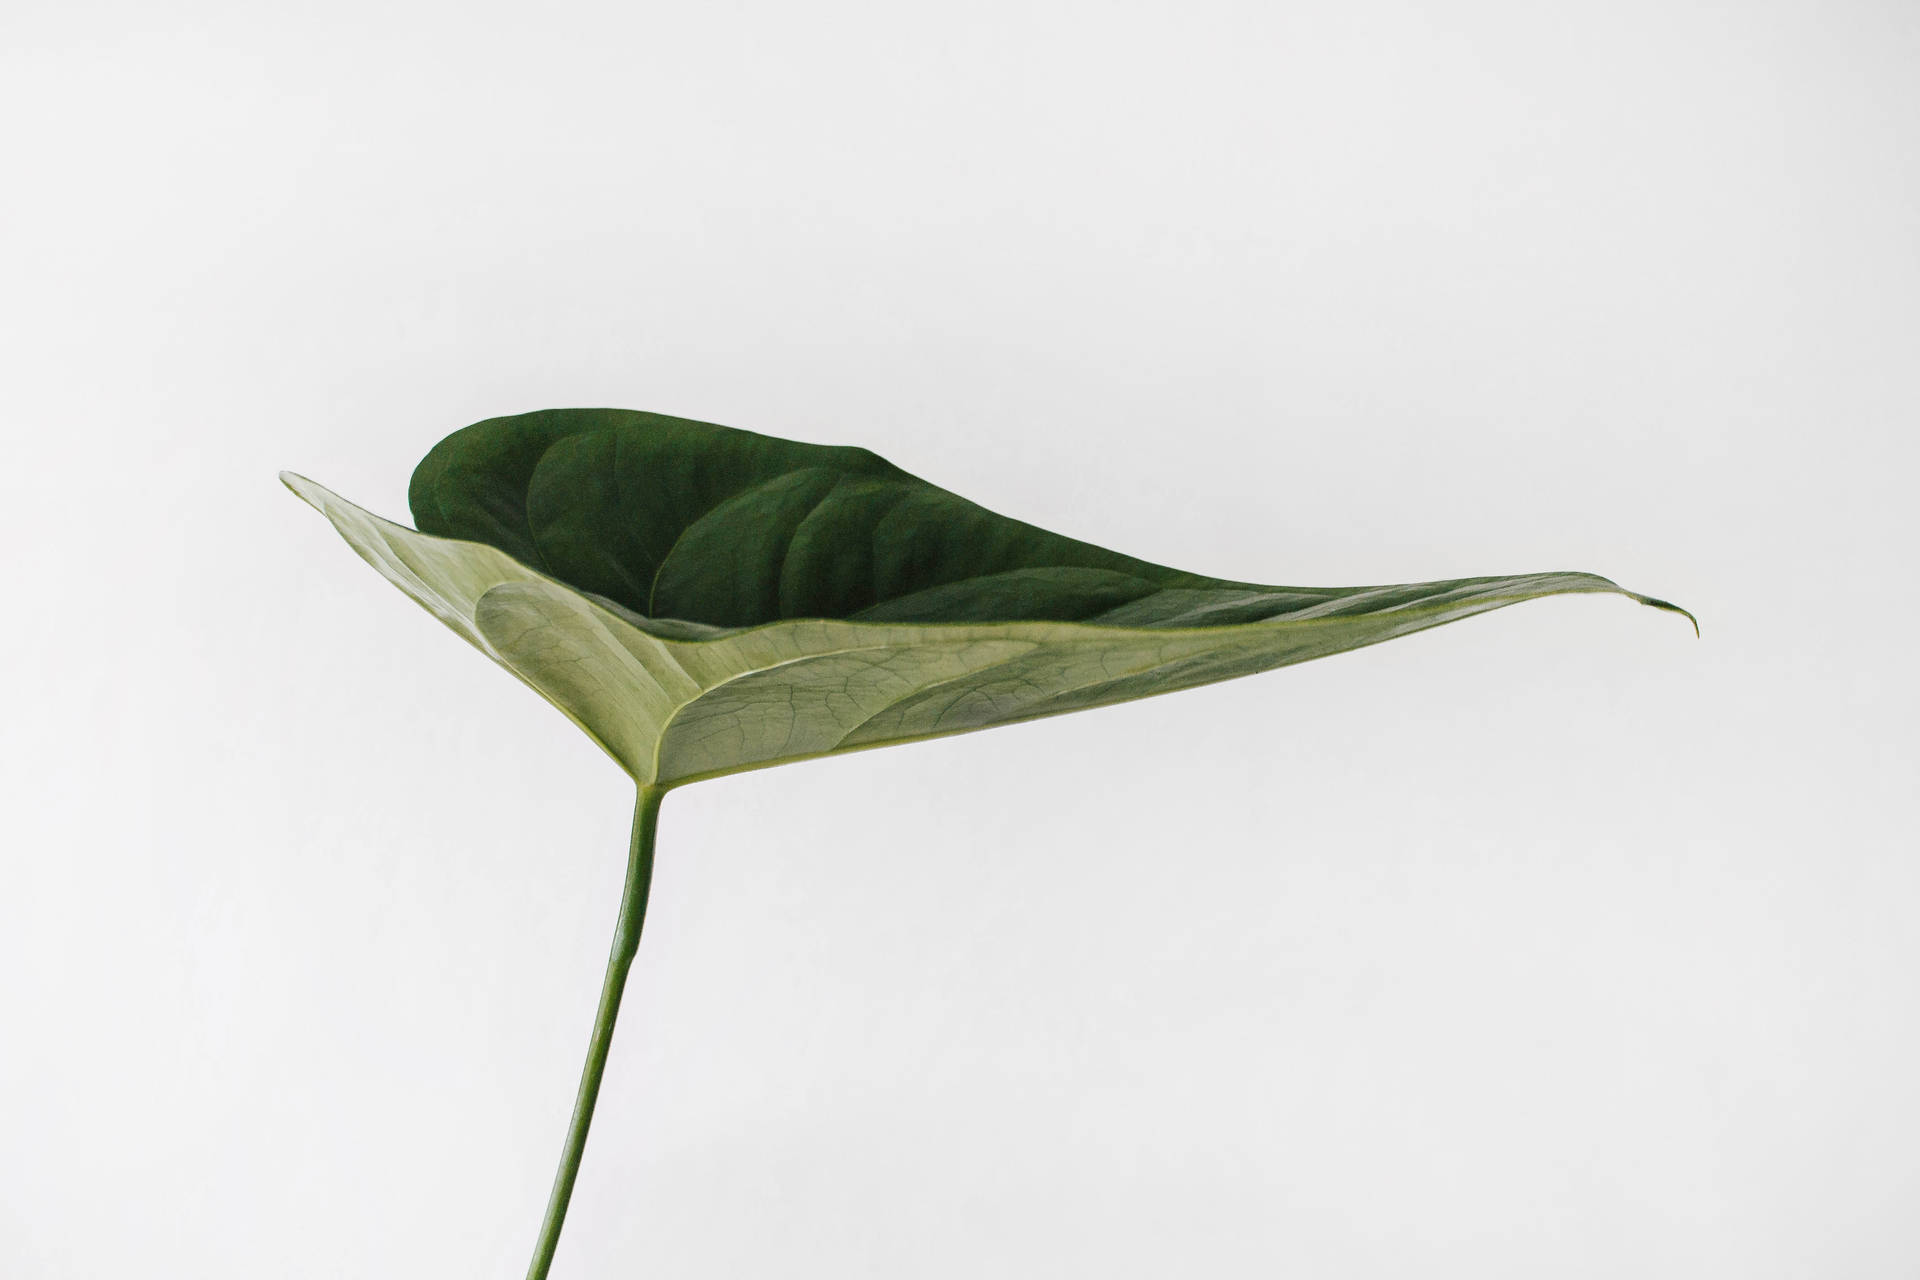 Aesthetic Minimalist Leaf Picture